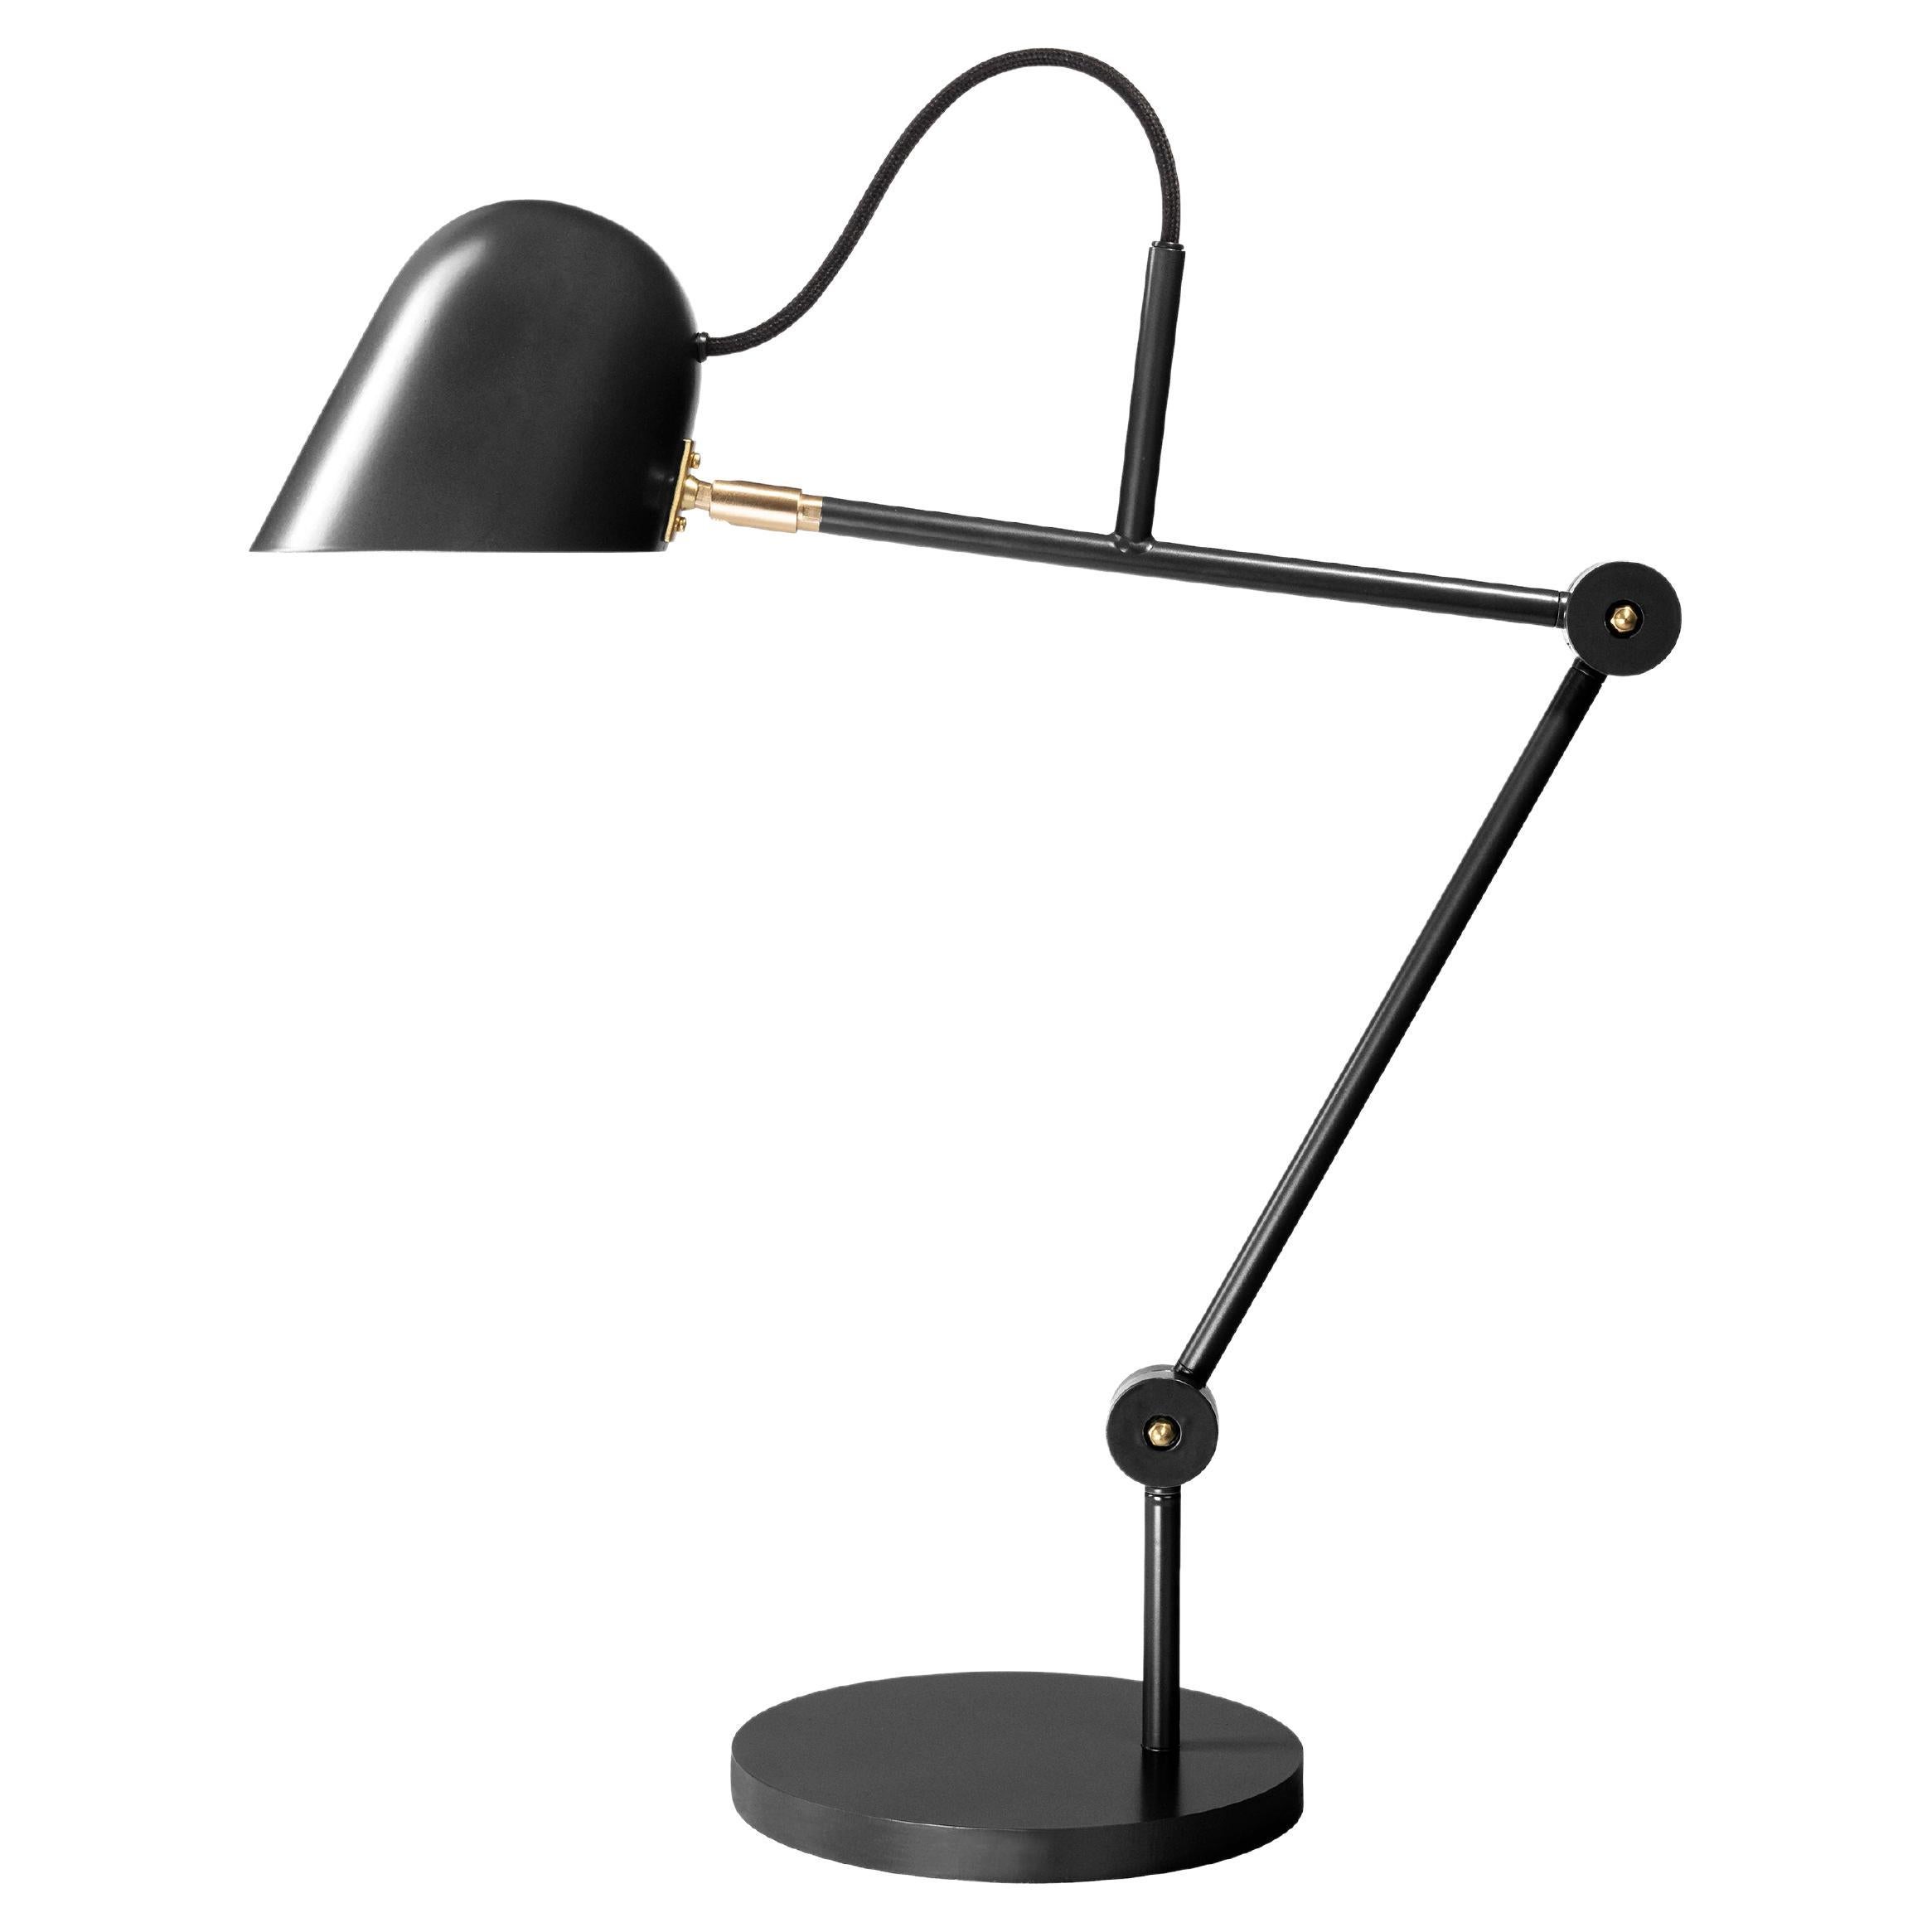 'Streck' Adjustable Table Lamp by Joel Karlsson for Örsjö in Black For Sale